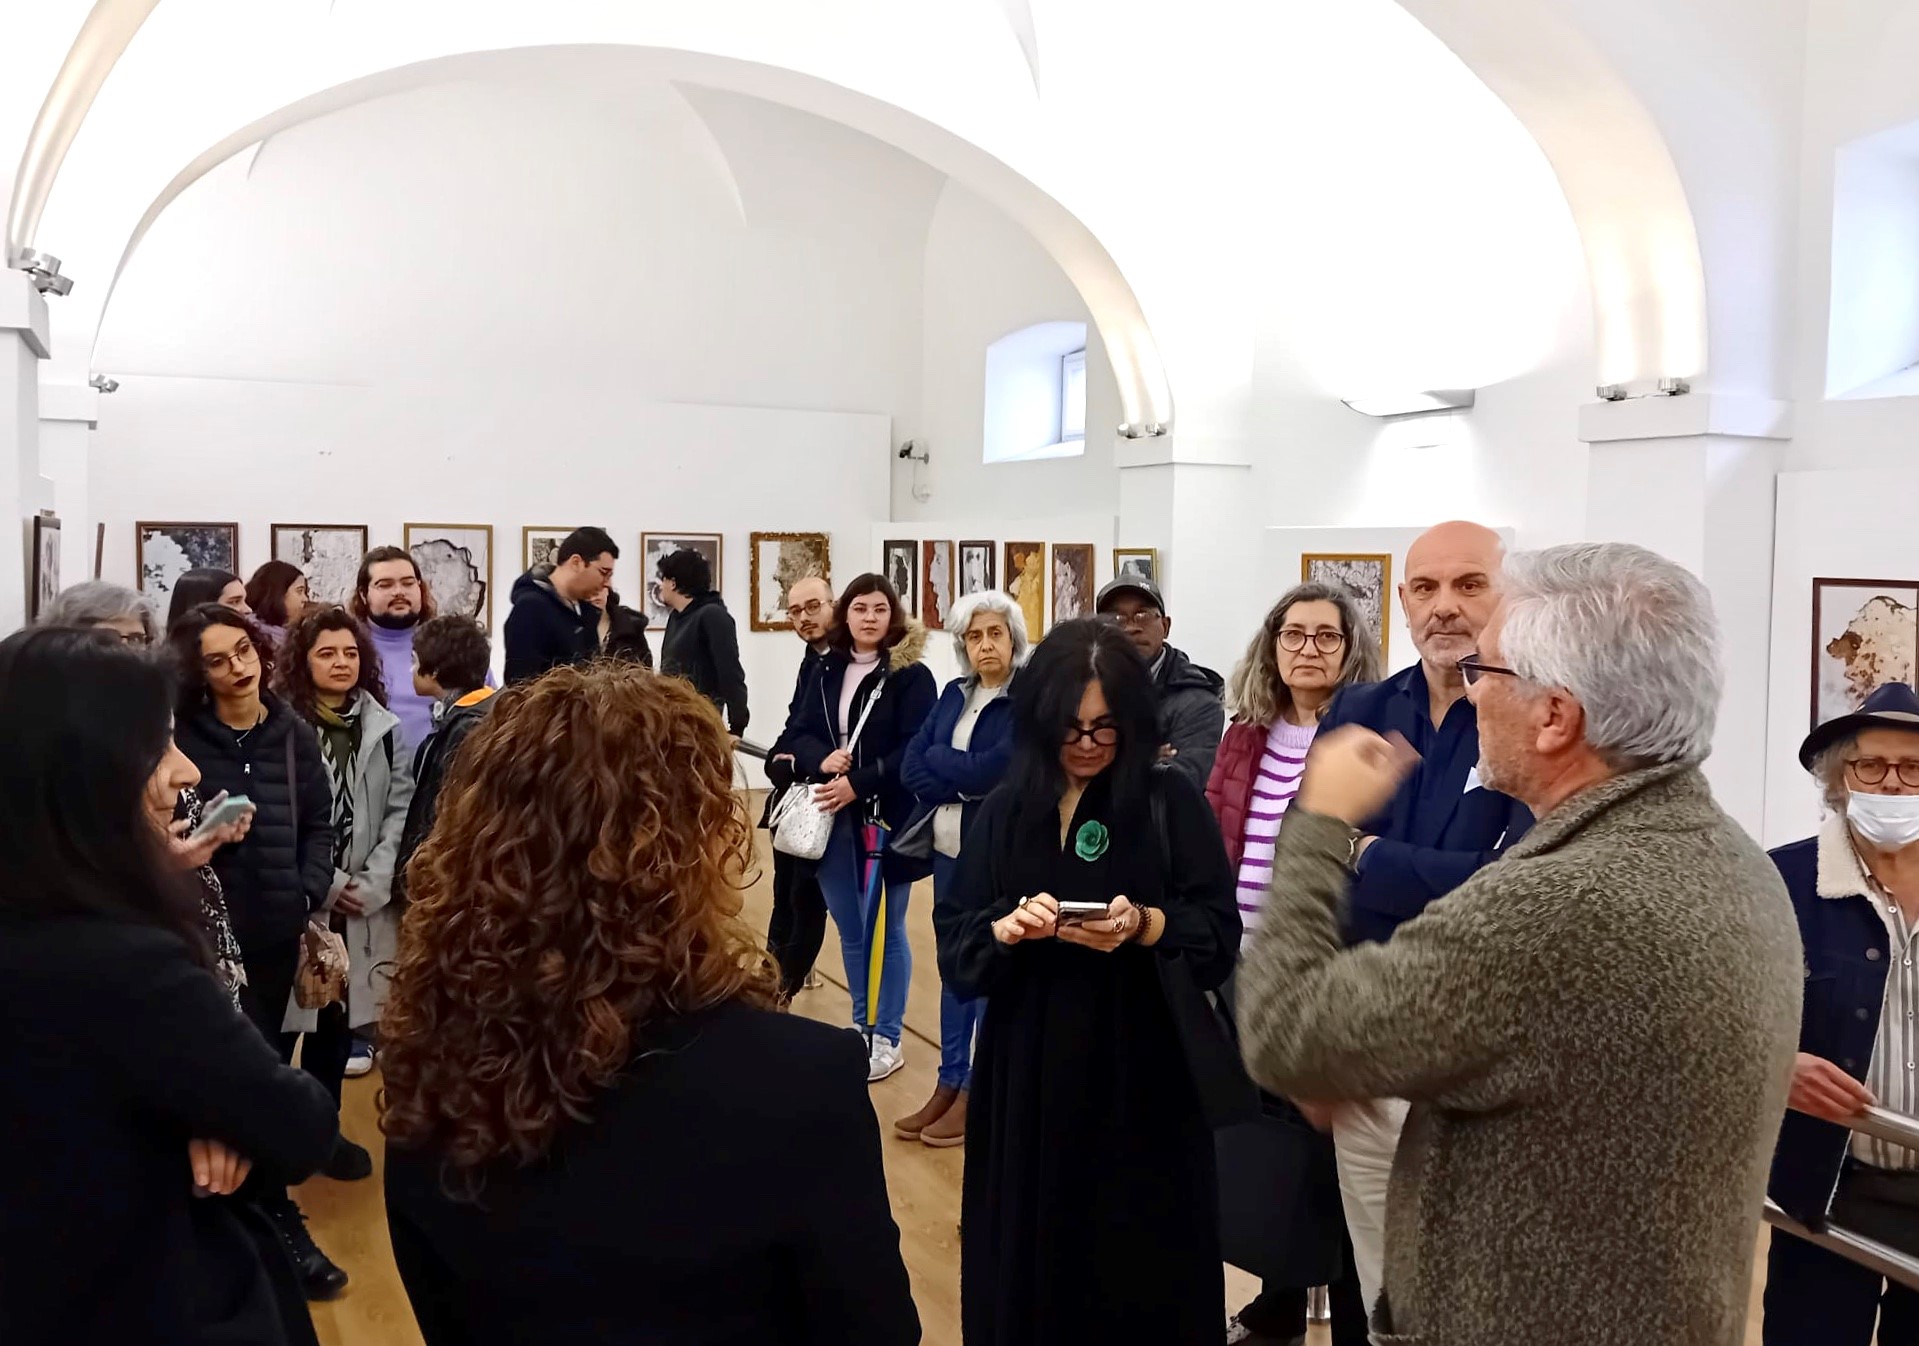 Técnico do IPDJ de Portalegre e autor da exposição, Raul Ladeira, a explicar aos presentes na inauguração da exposição o teor da mesma.